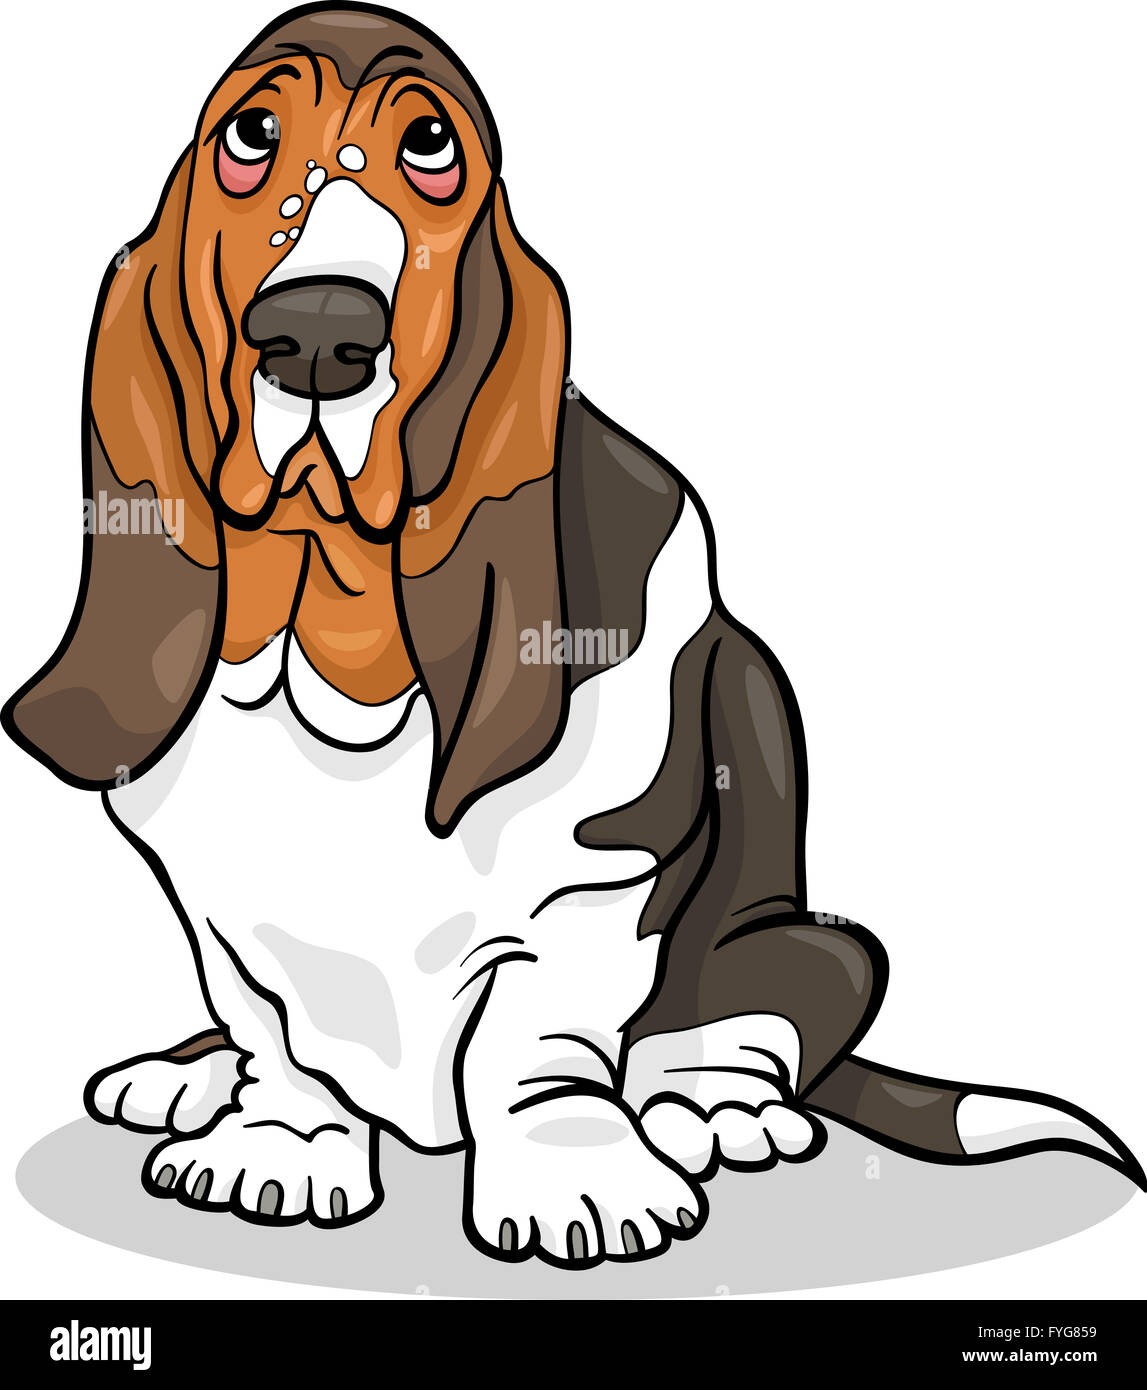 basset hound dog cartoon illustration Stock Photo - Alamy